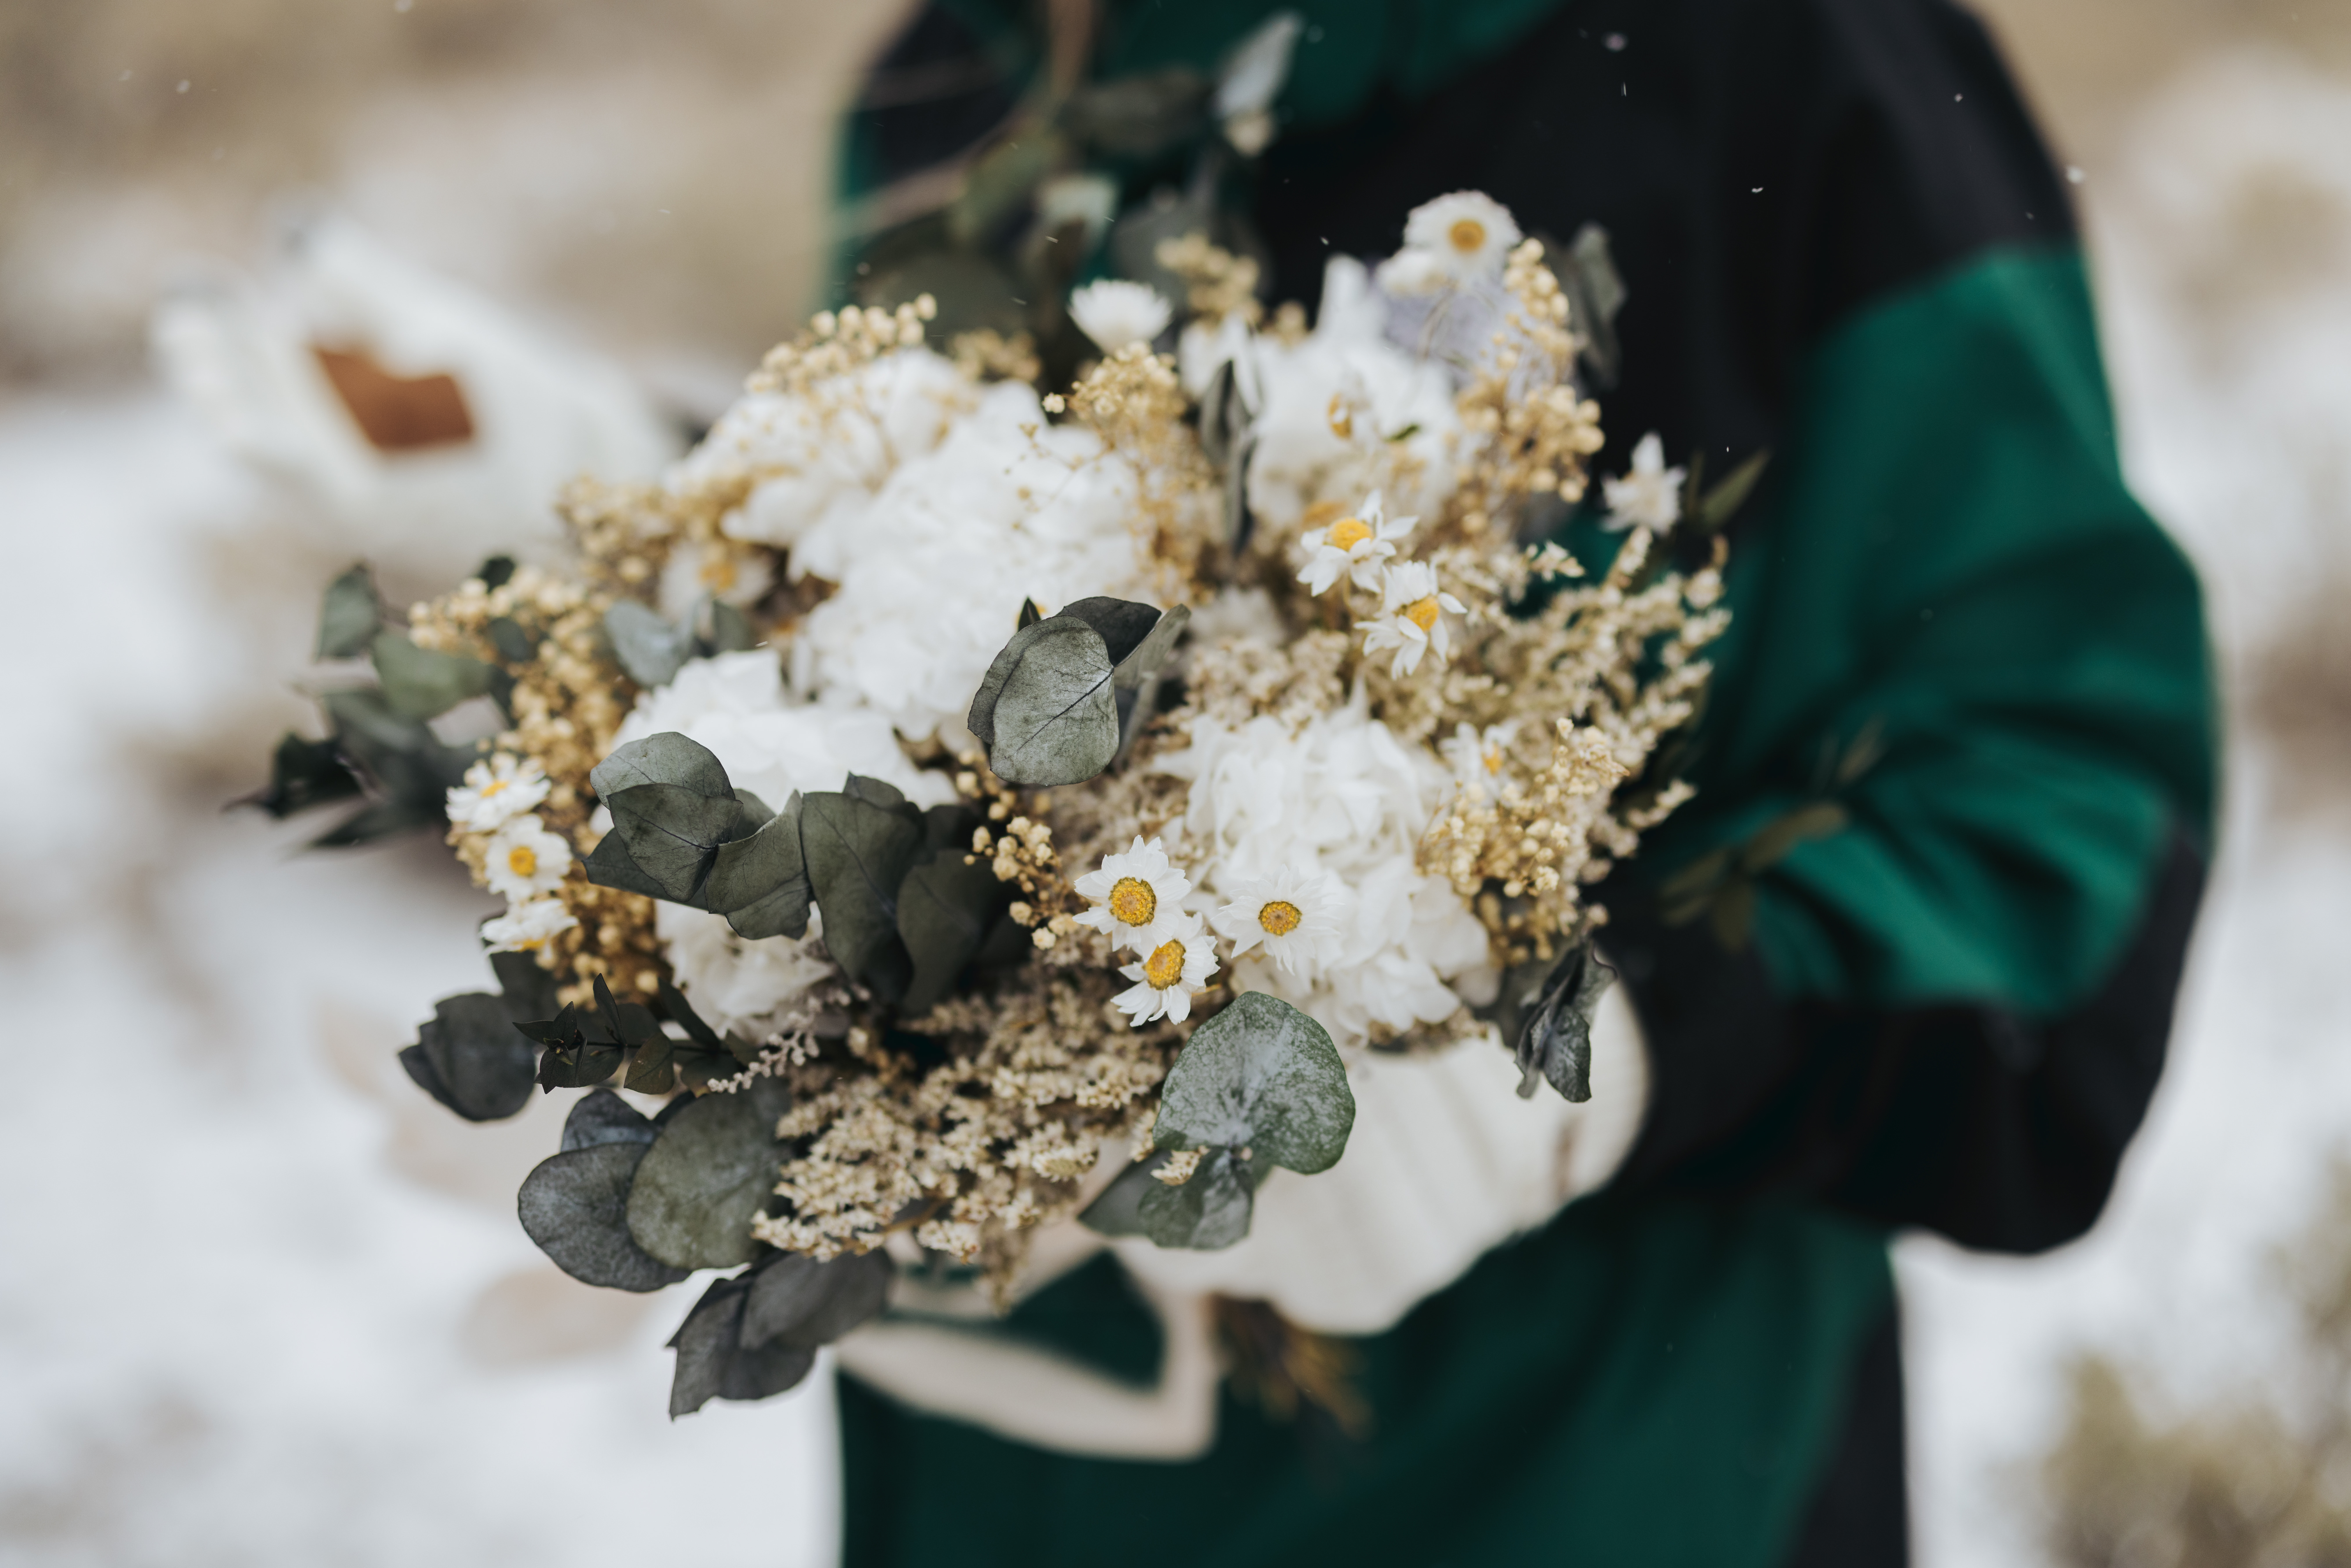 snowy wedding bouquet